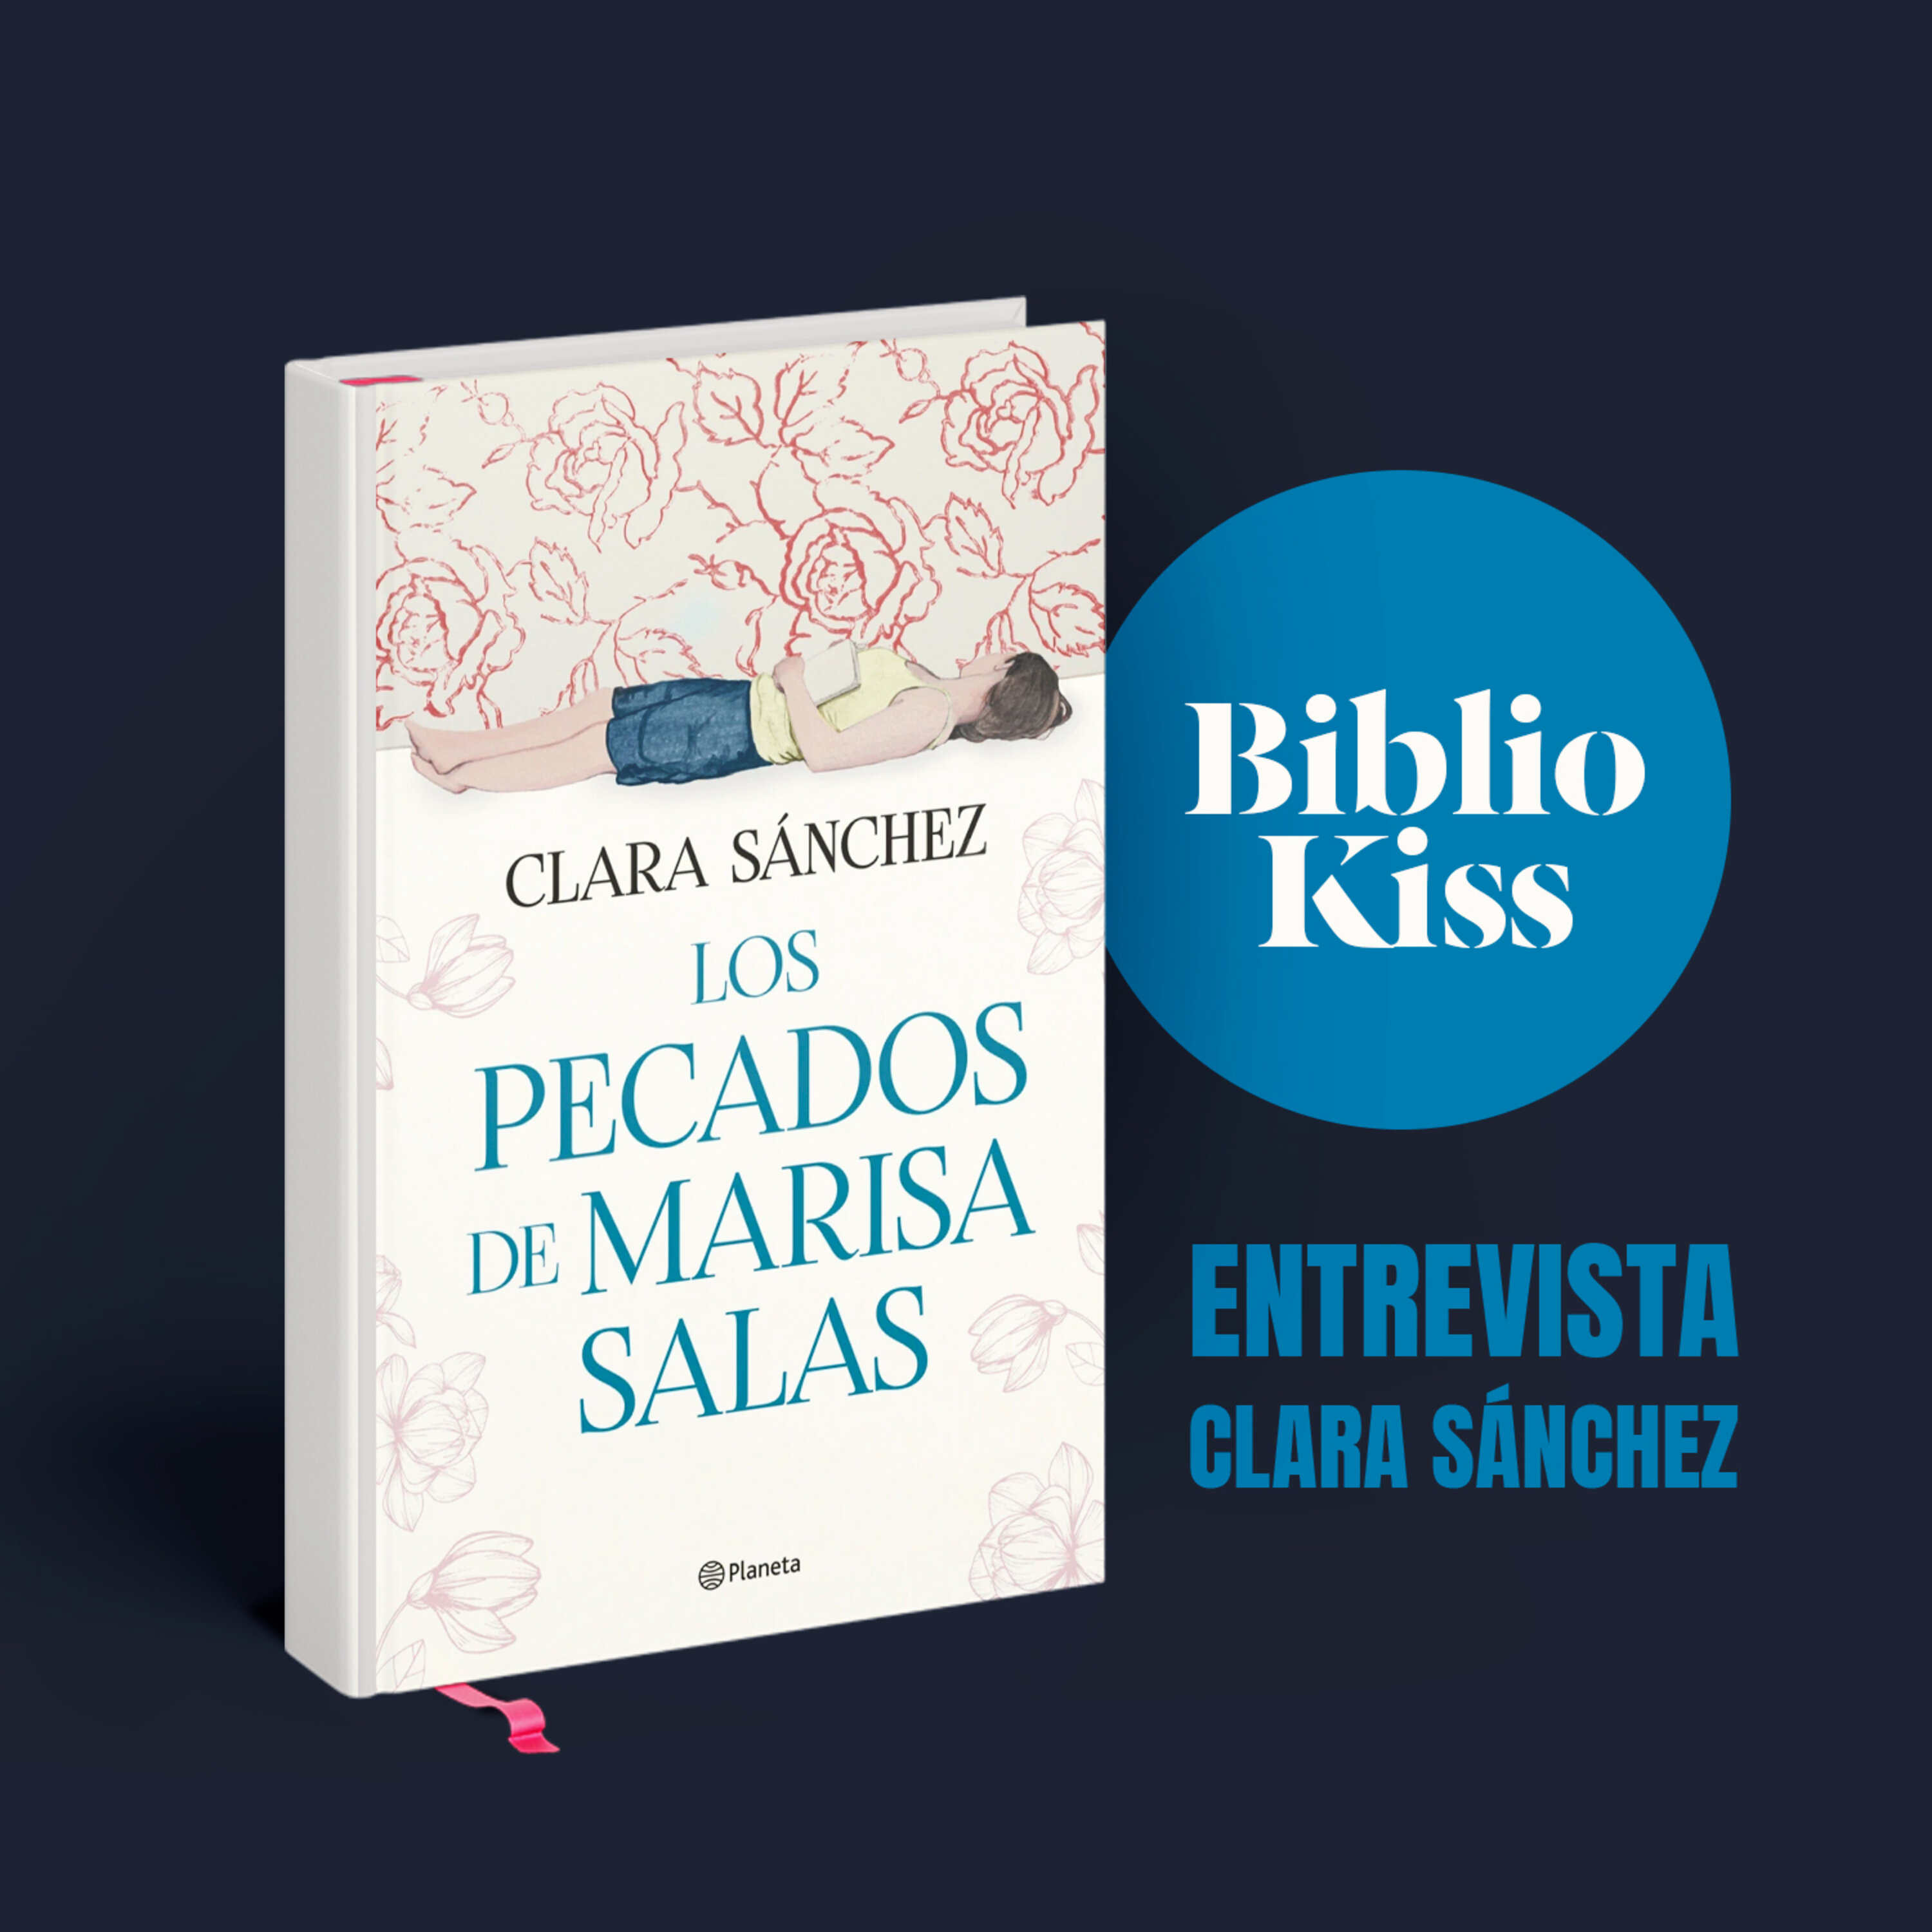 Clara Sánchez nos presenta "Los pecados de Marisa Salas"